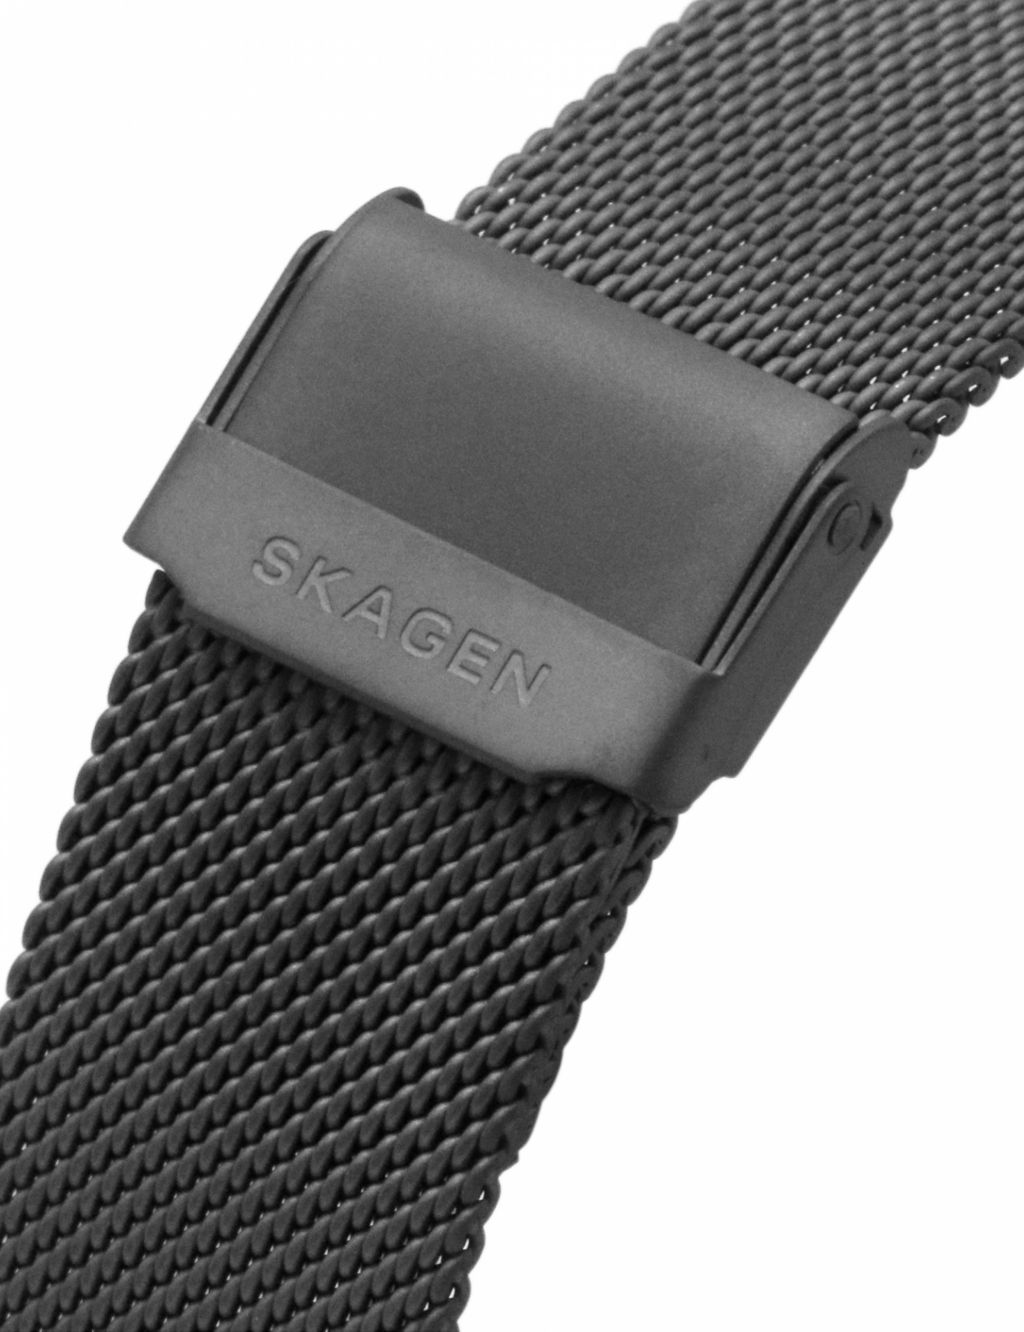 Skagen Anchor Grey Stainless Steel Bracelet Quartz Watch image 7